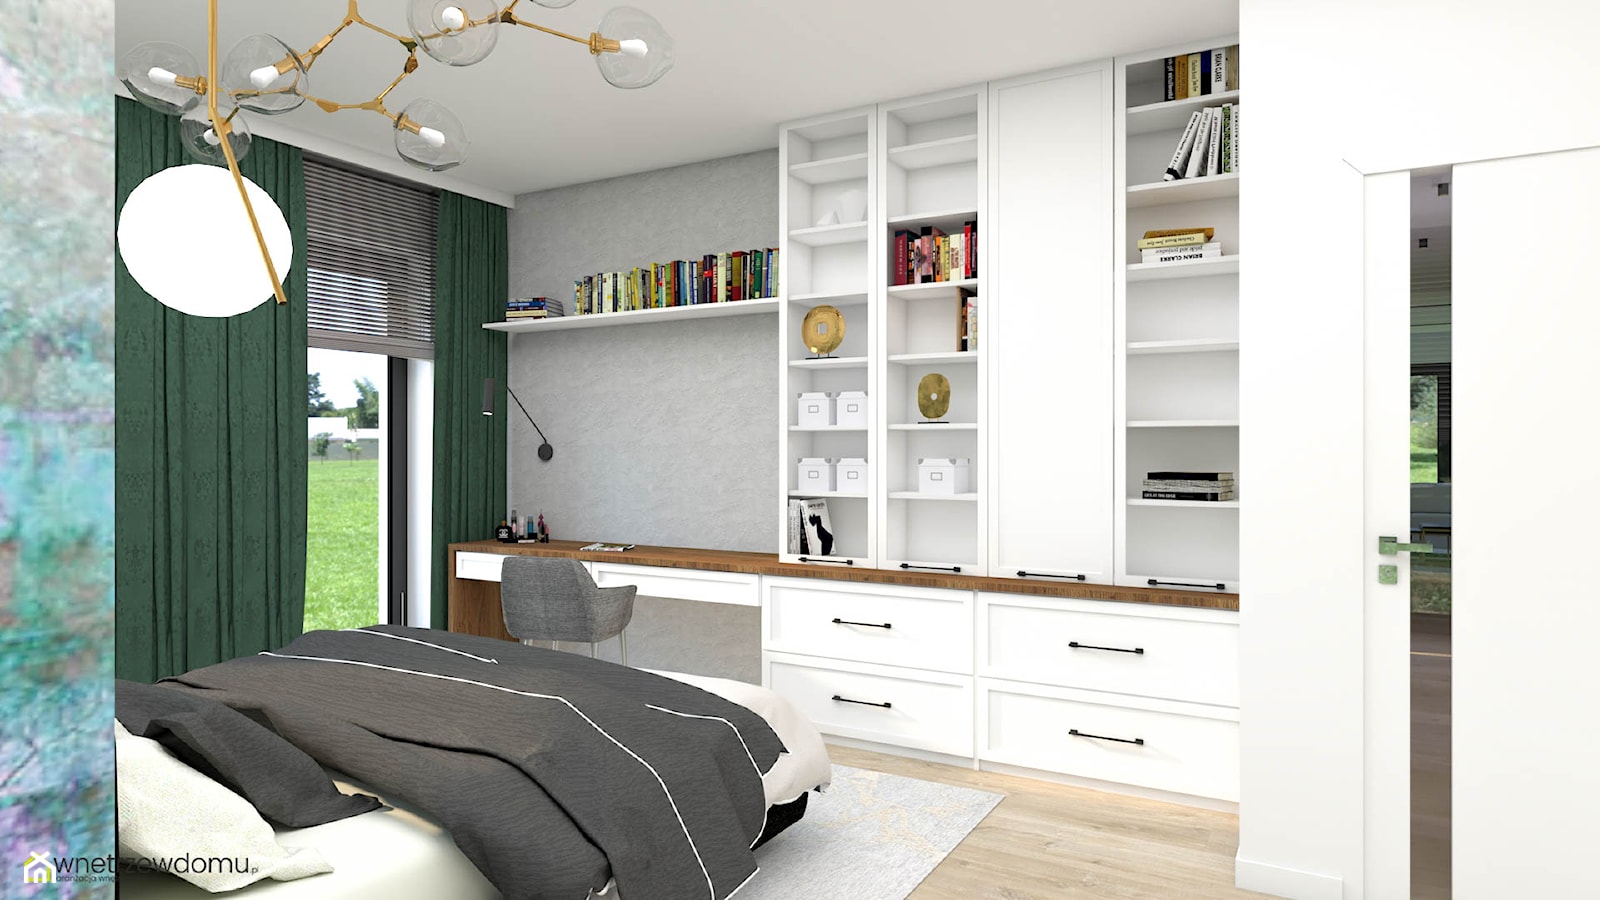 Przestronna sypialnia z garderobą za ścianą - zdjęcie od wnetrzewdomu - Homebook